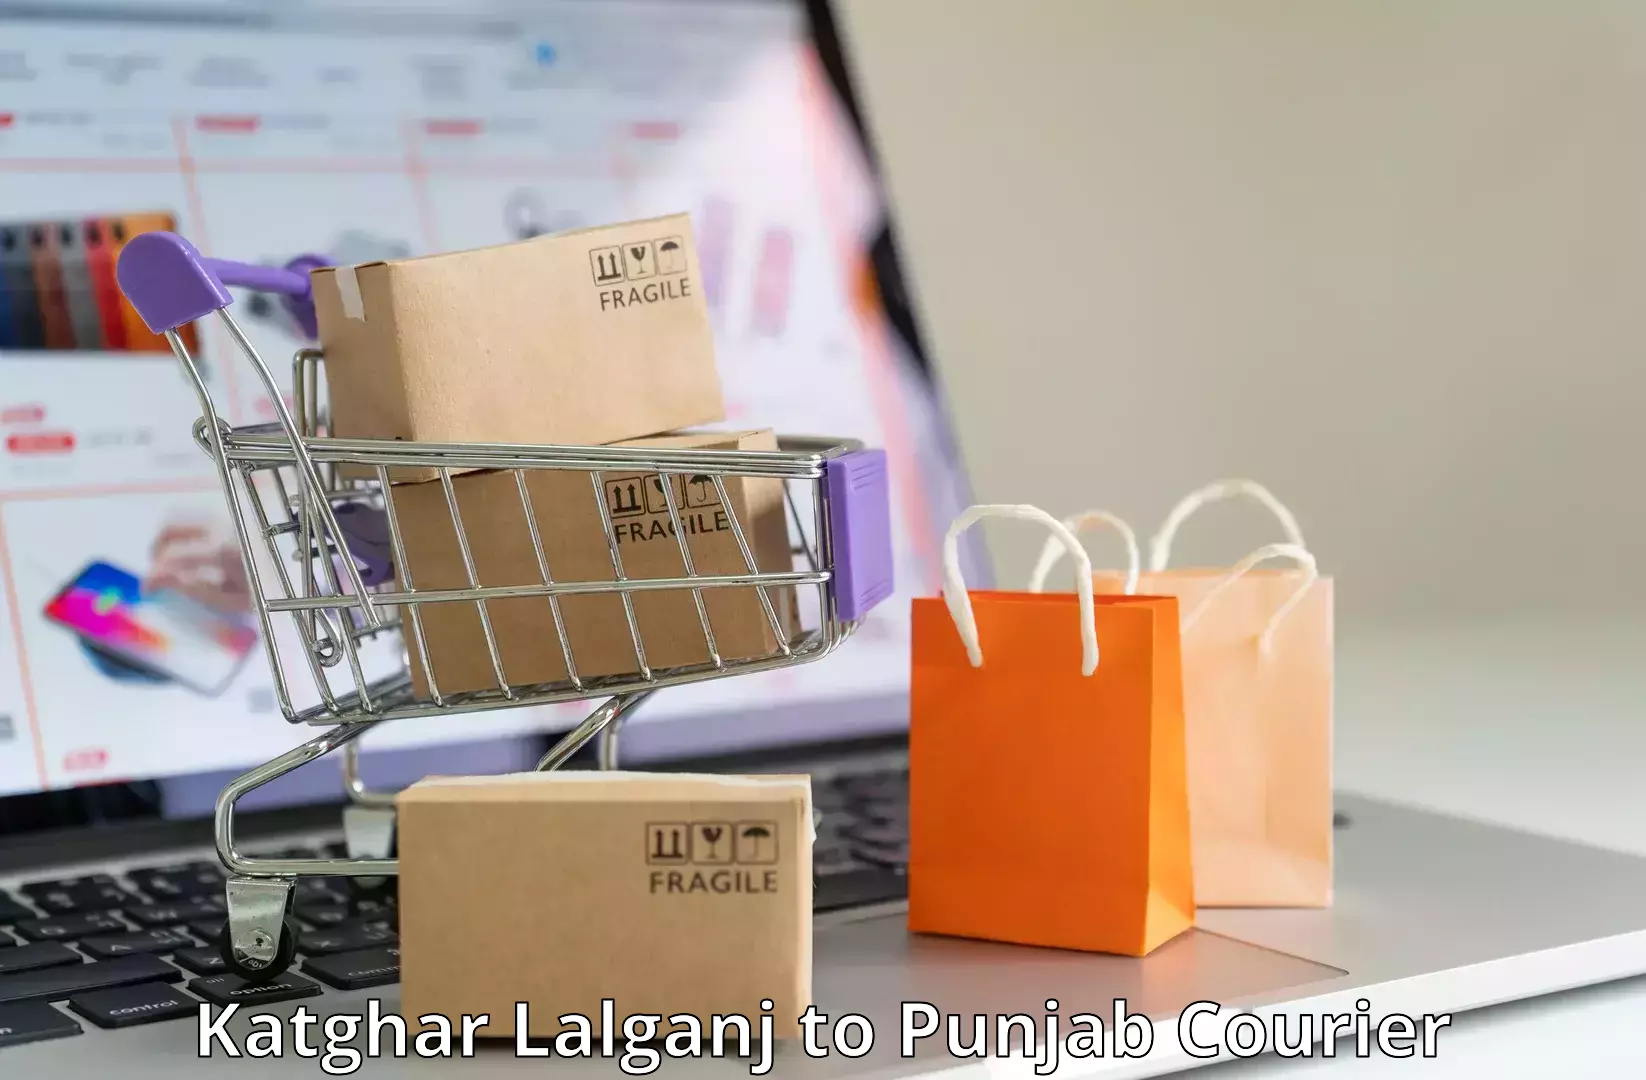 Customer-centric shipping Katghar Lalganj to Malerkotla